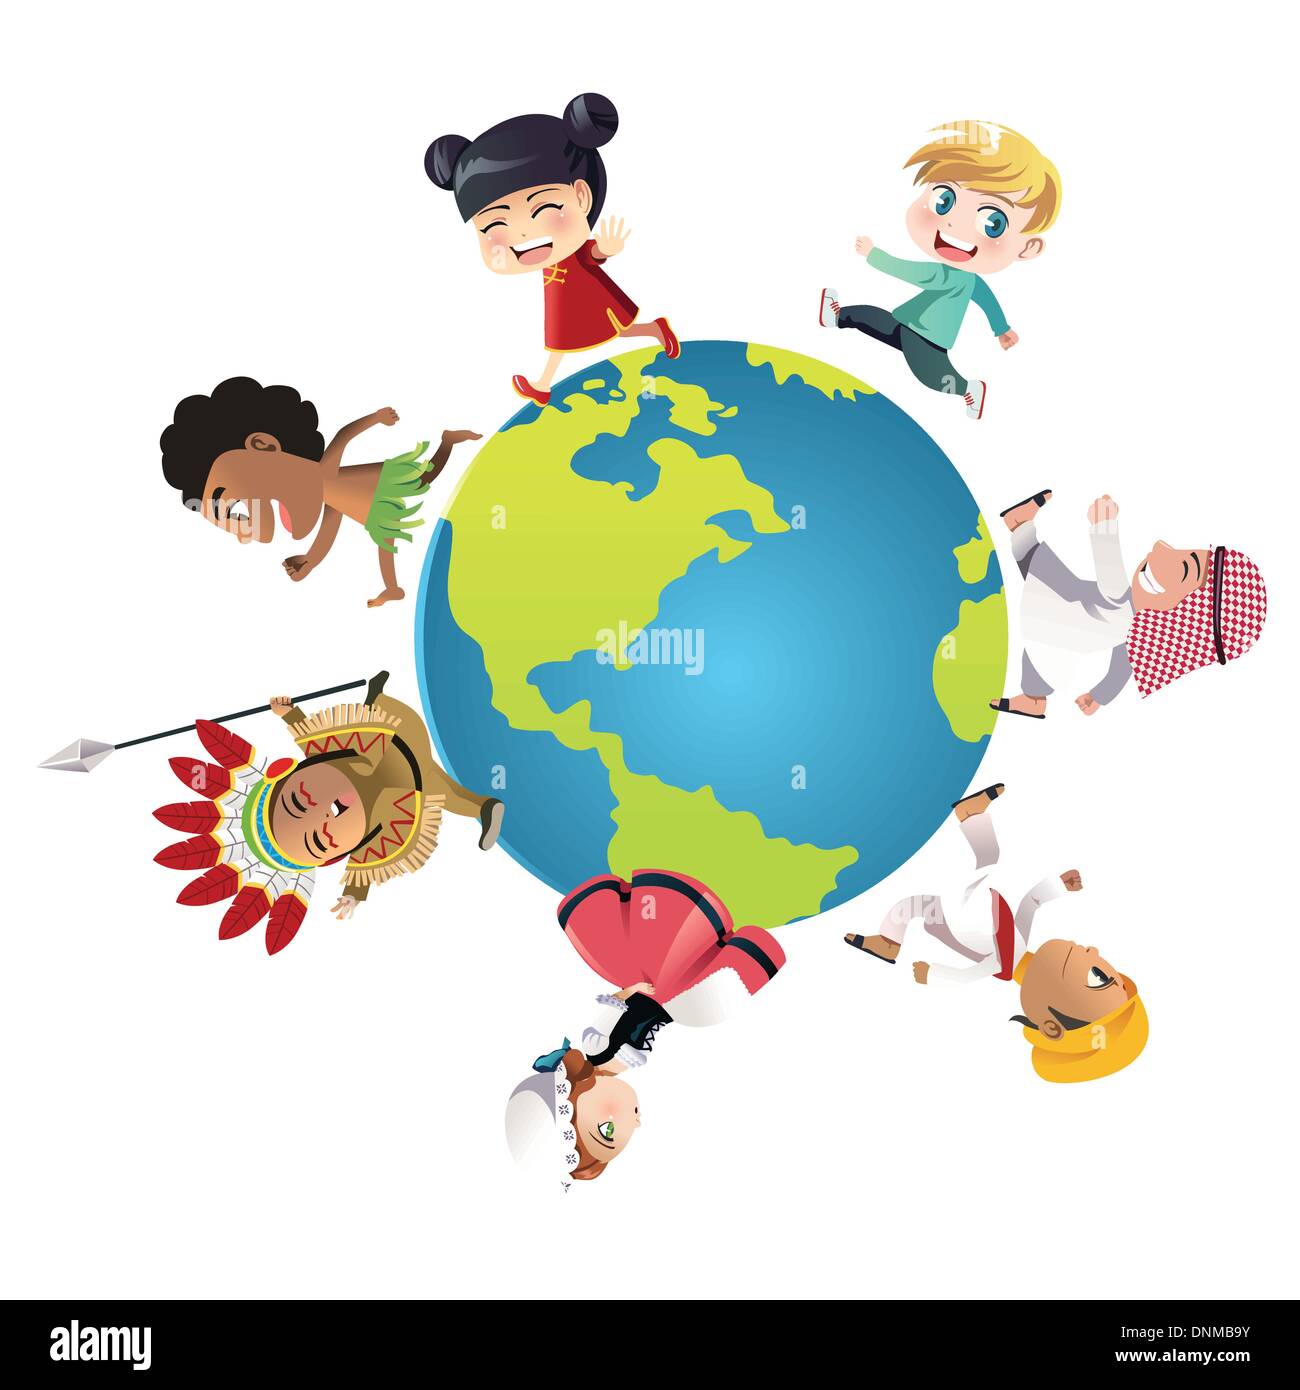 Eine Vektor-Illustration von Kindern in verschiedenen Nationalitäten, gekleidet in ihren traditionellen Kleidern herumlaufen der Welt, kann u Stock Vektor